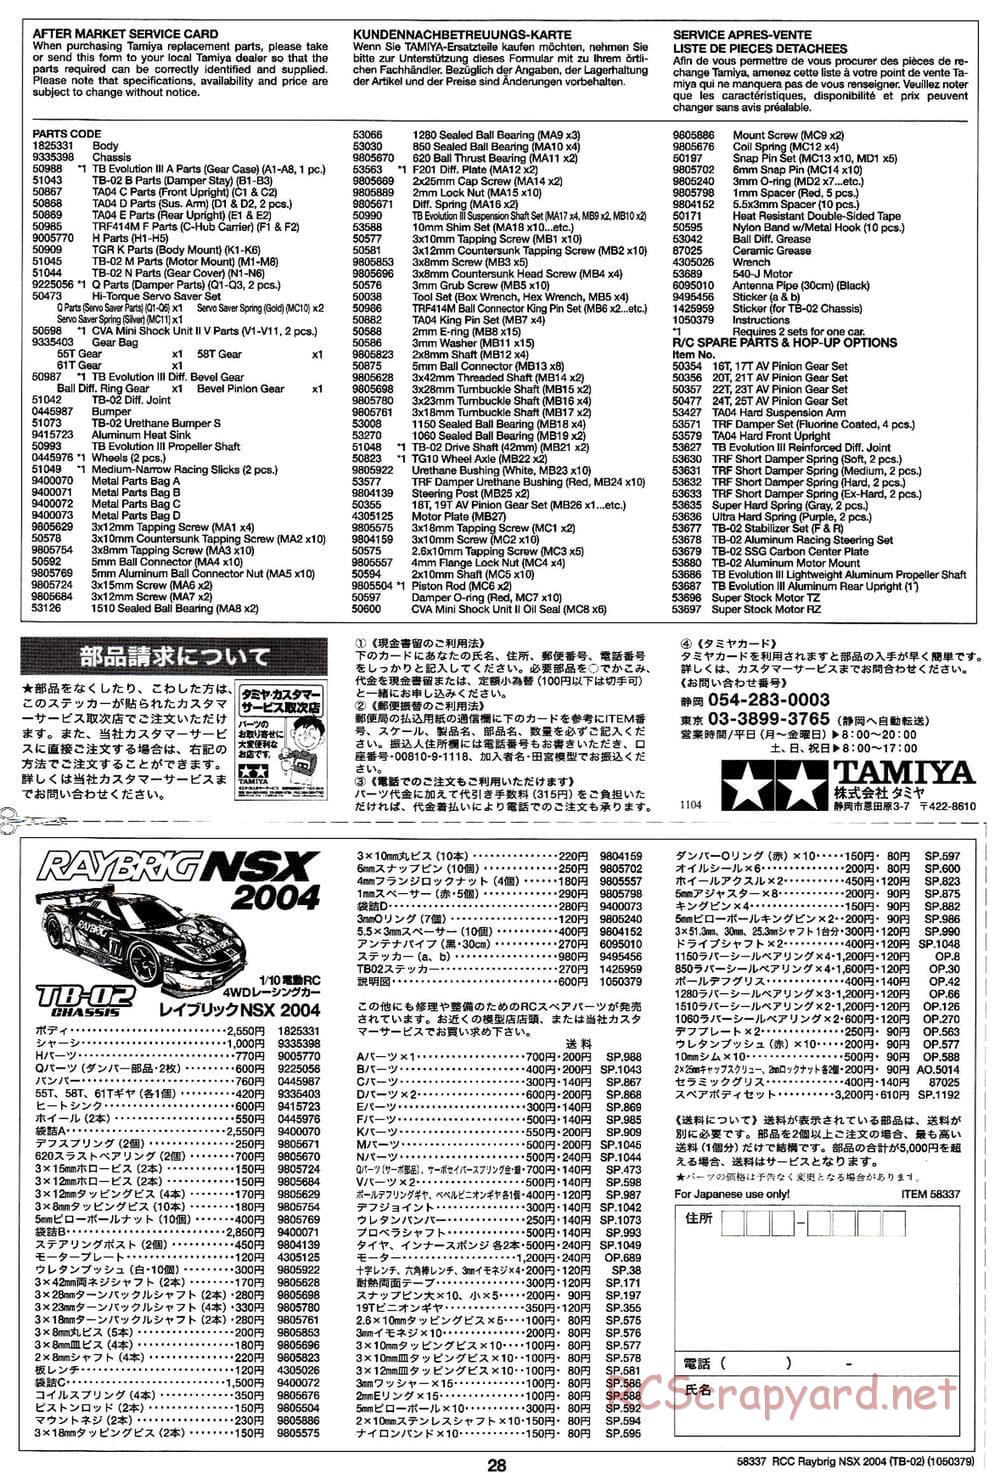 Tamiya - Raybrig NSX 2004 - TB-02 Chassis - Manual - Page 28